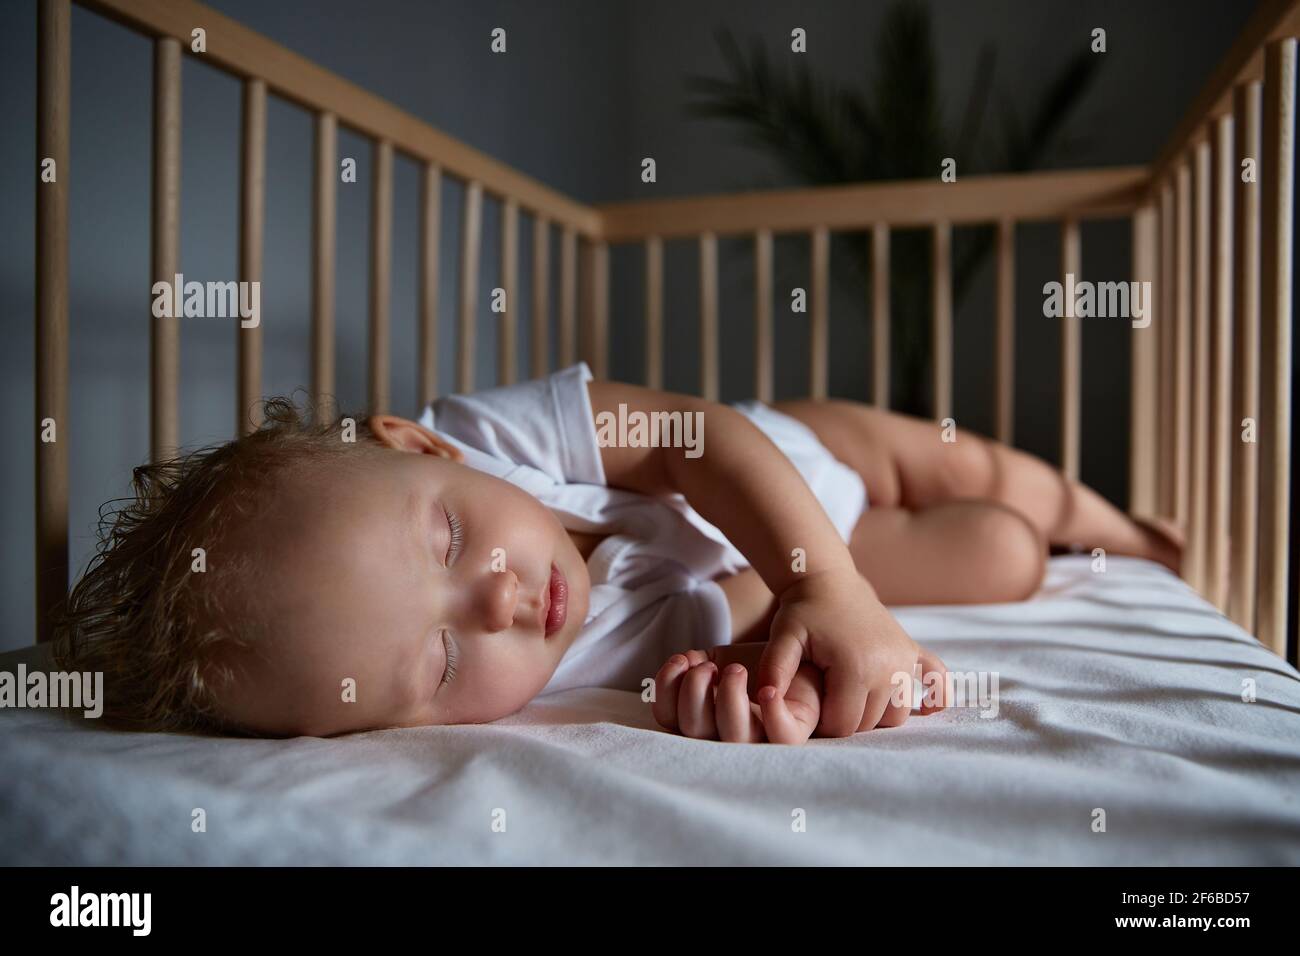 Nettes Baby schläft nachts in einer Wiege für Babys ohne Baldachin und Stoßstangen. Sicher schlafen in einem dunklen, geräumigen Zimmer mit einem Kinderbett und einer Blume. Innen o Stockfoto